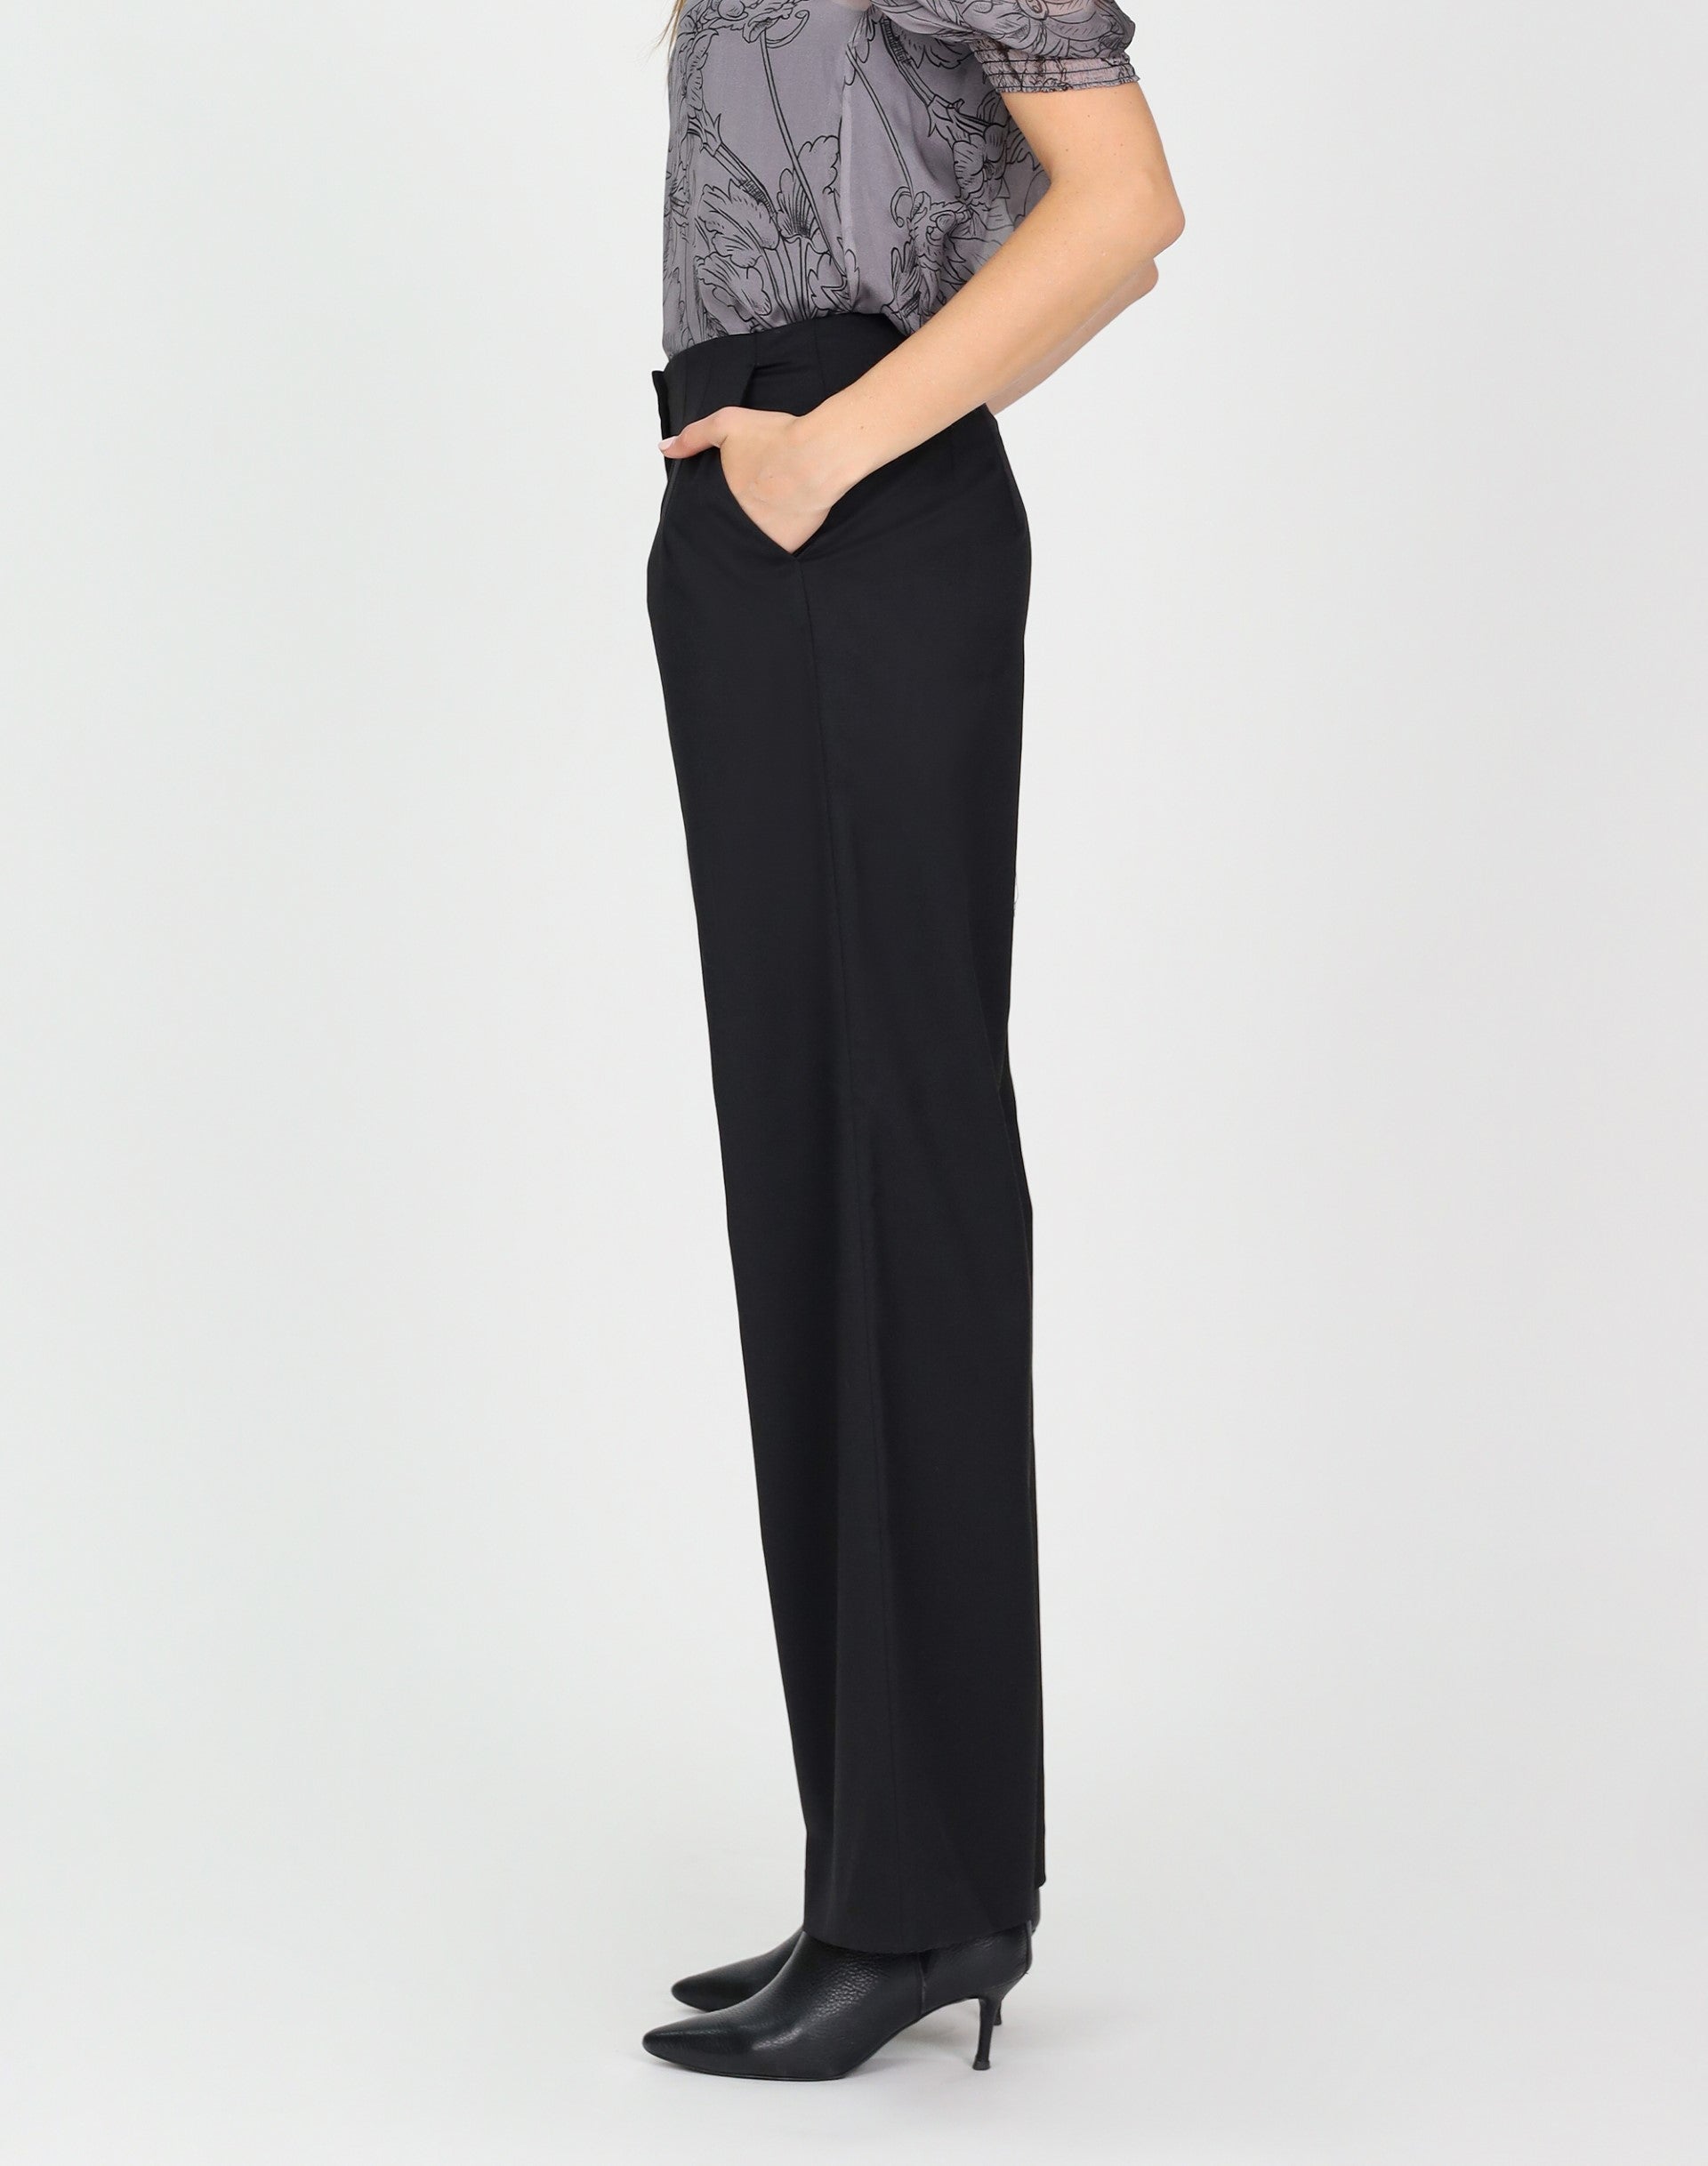 Coach Dress Pants Black Wool Trousers Women's size 30 | eBay